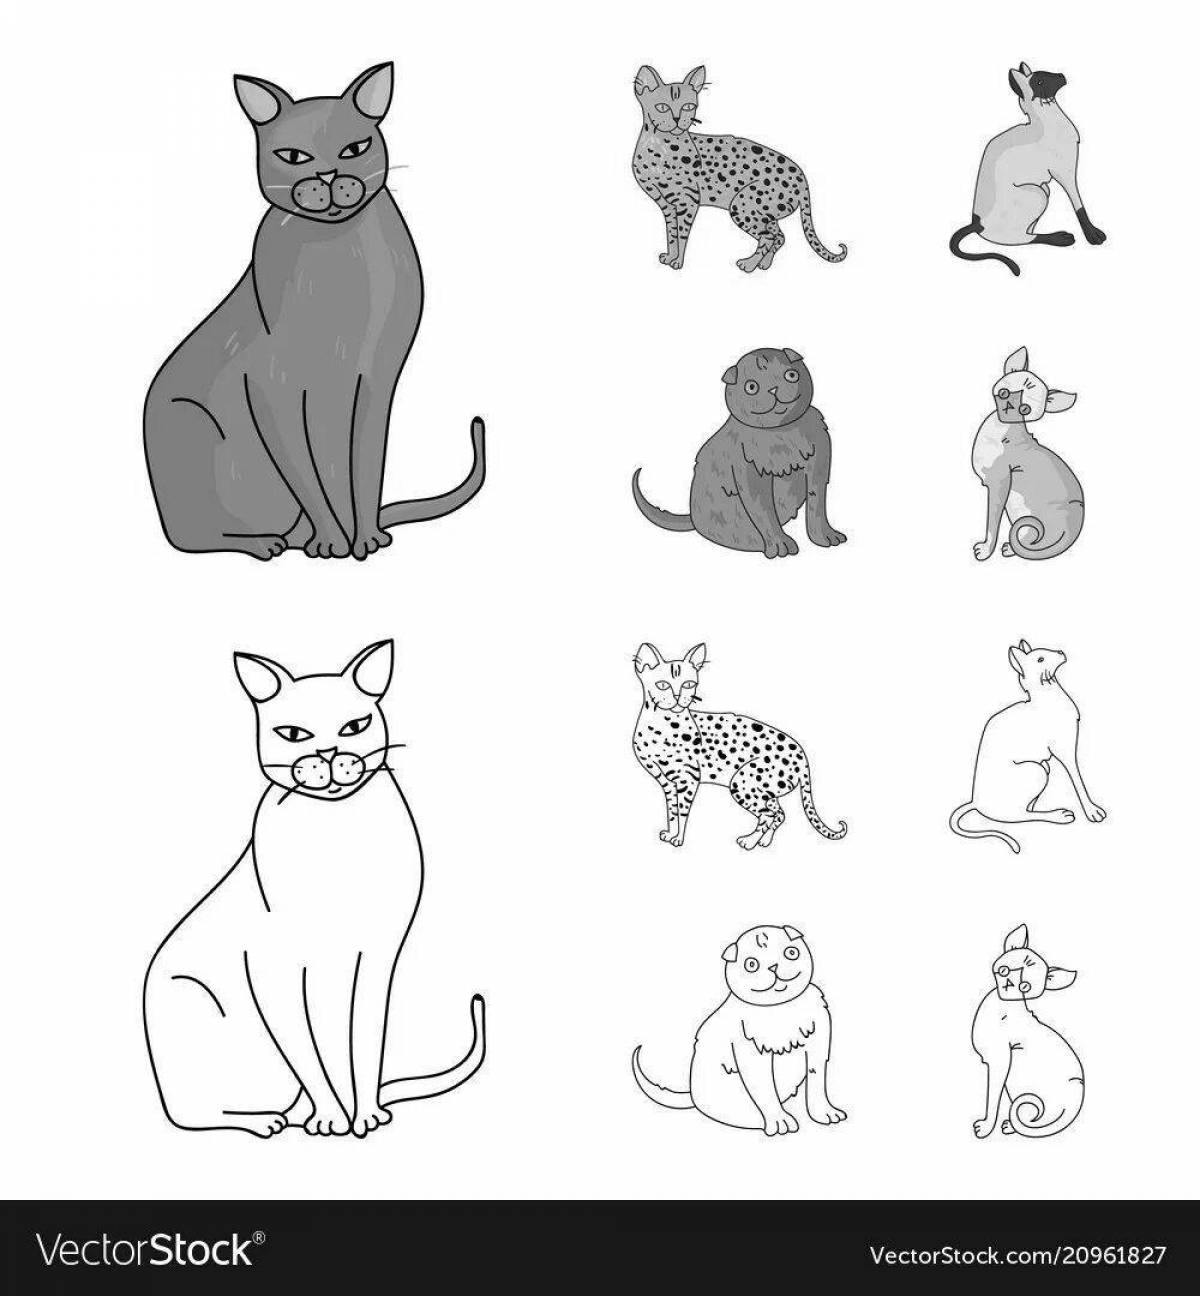 Увлекательная раскраска породы кошек с именами